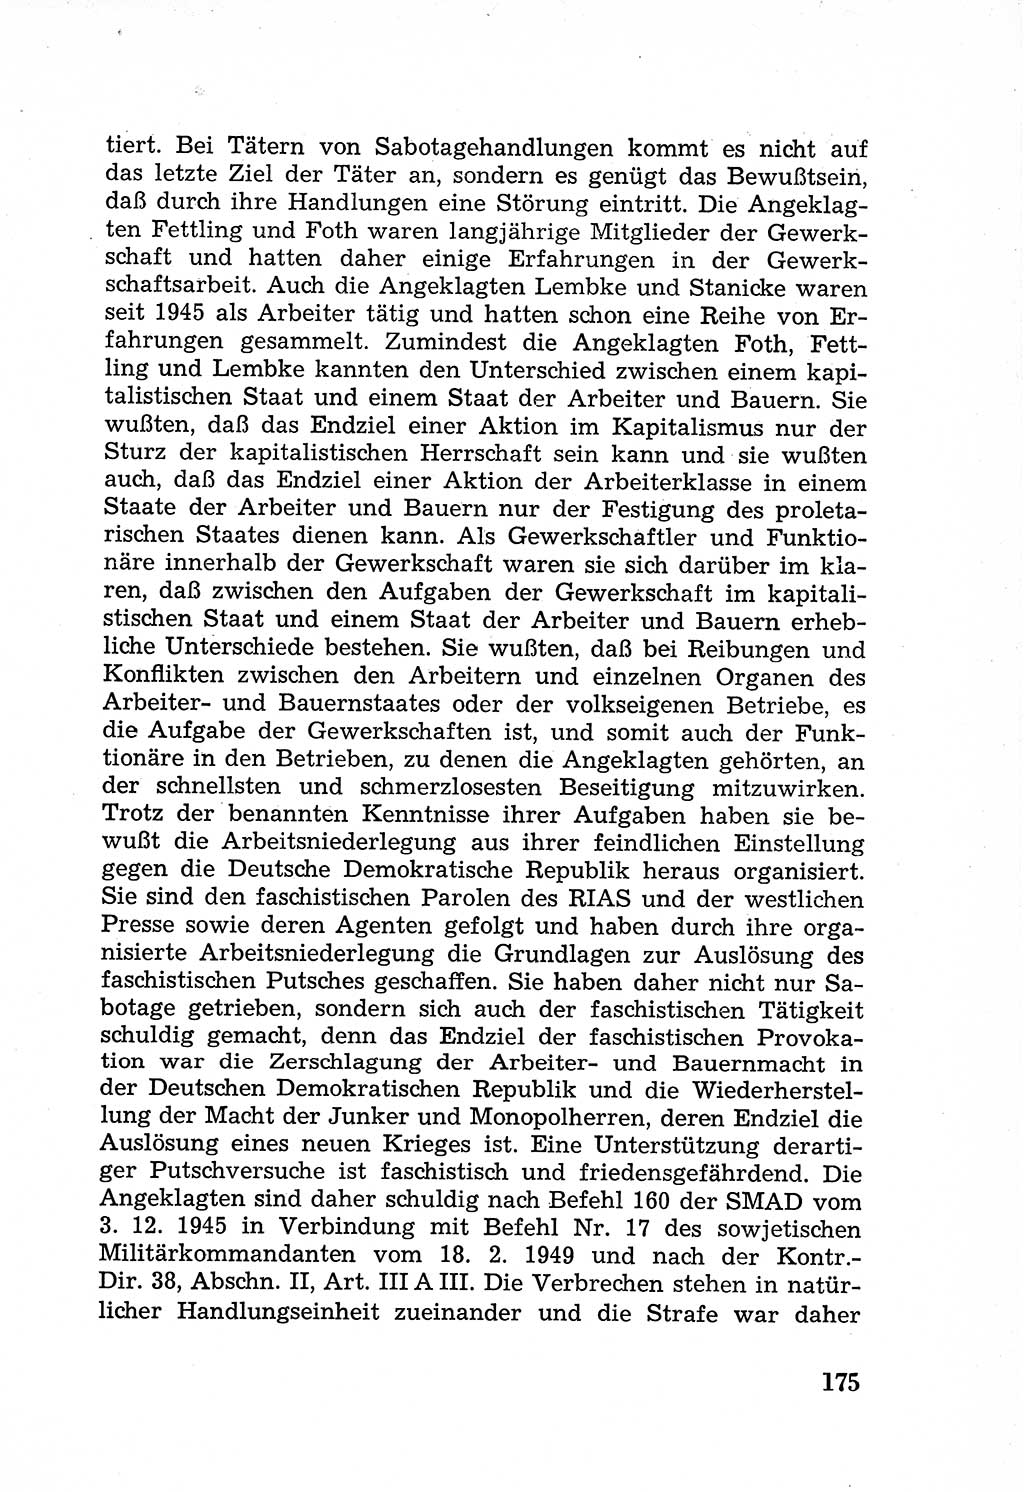 Rechtsstaat in zweierlei Hinsicht, Untersuchungsausschuß freiheitlicher Juristen (UfJ) [Bundesrepublik Deutschland (BRD)] 1956, Seite 175 (R.-St. UfJ BRD 1956, S. 175)